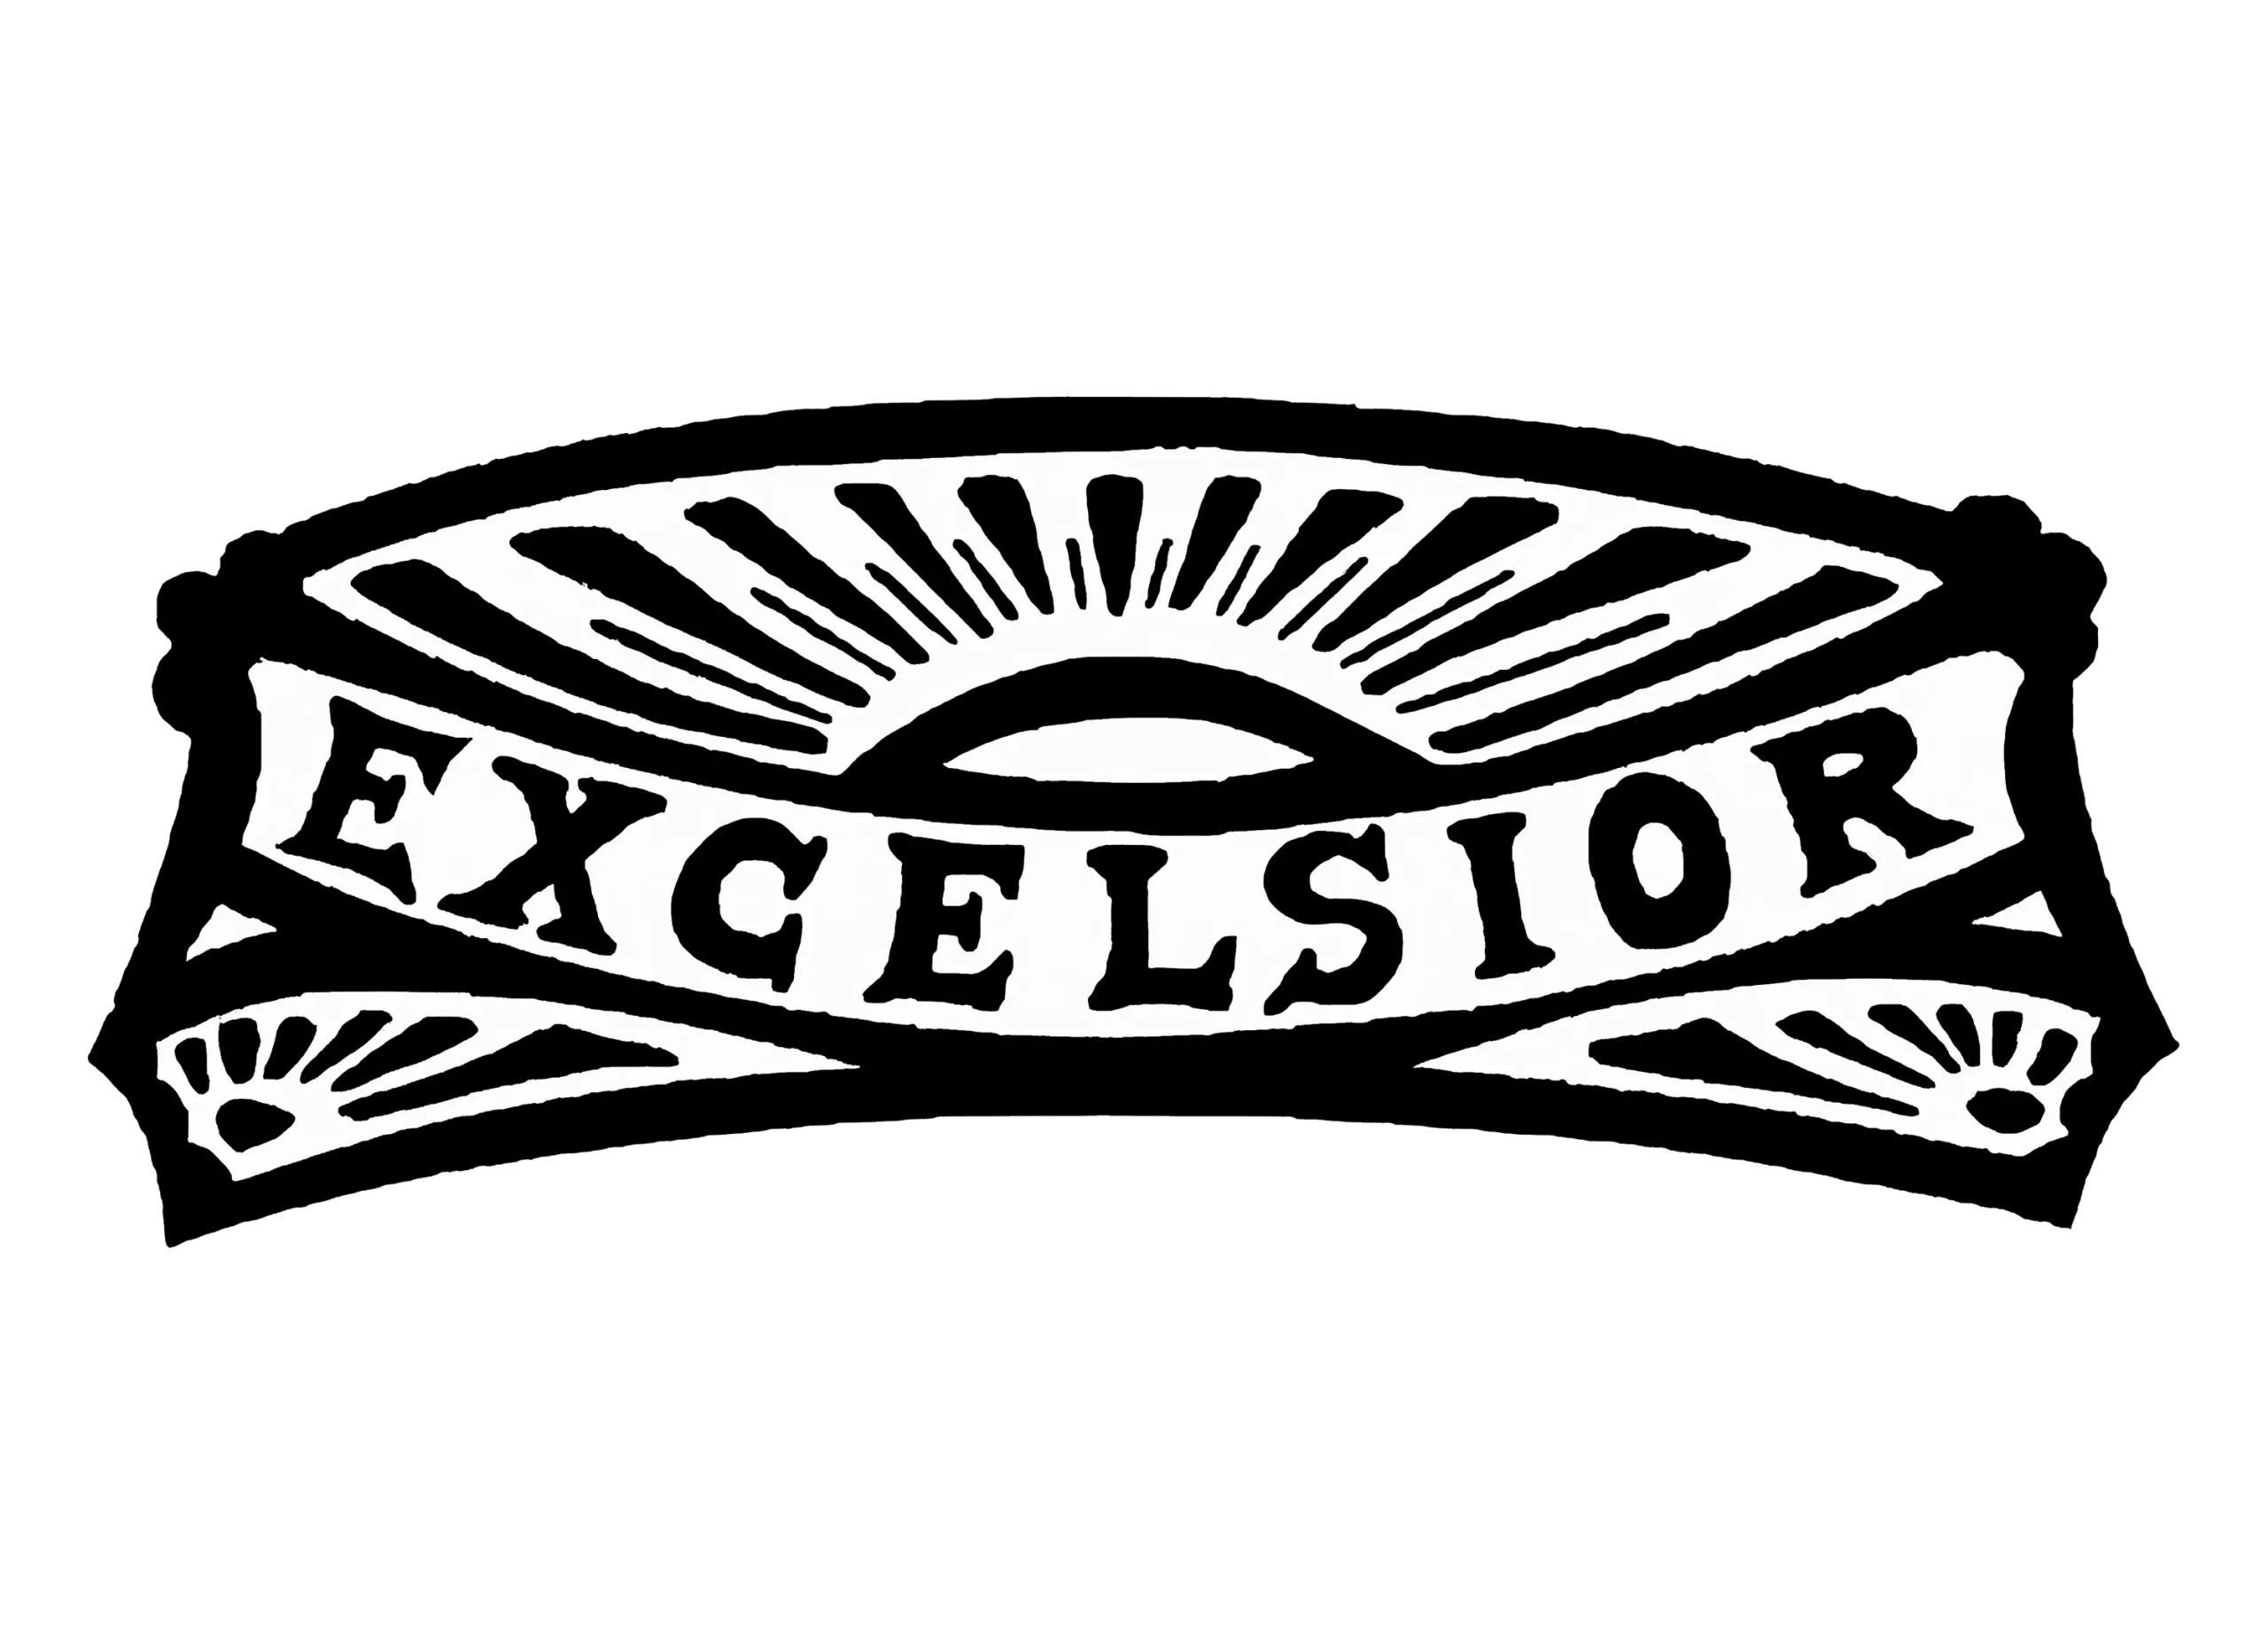 Excelsior logo 1907